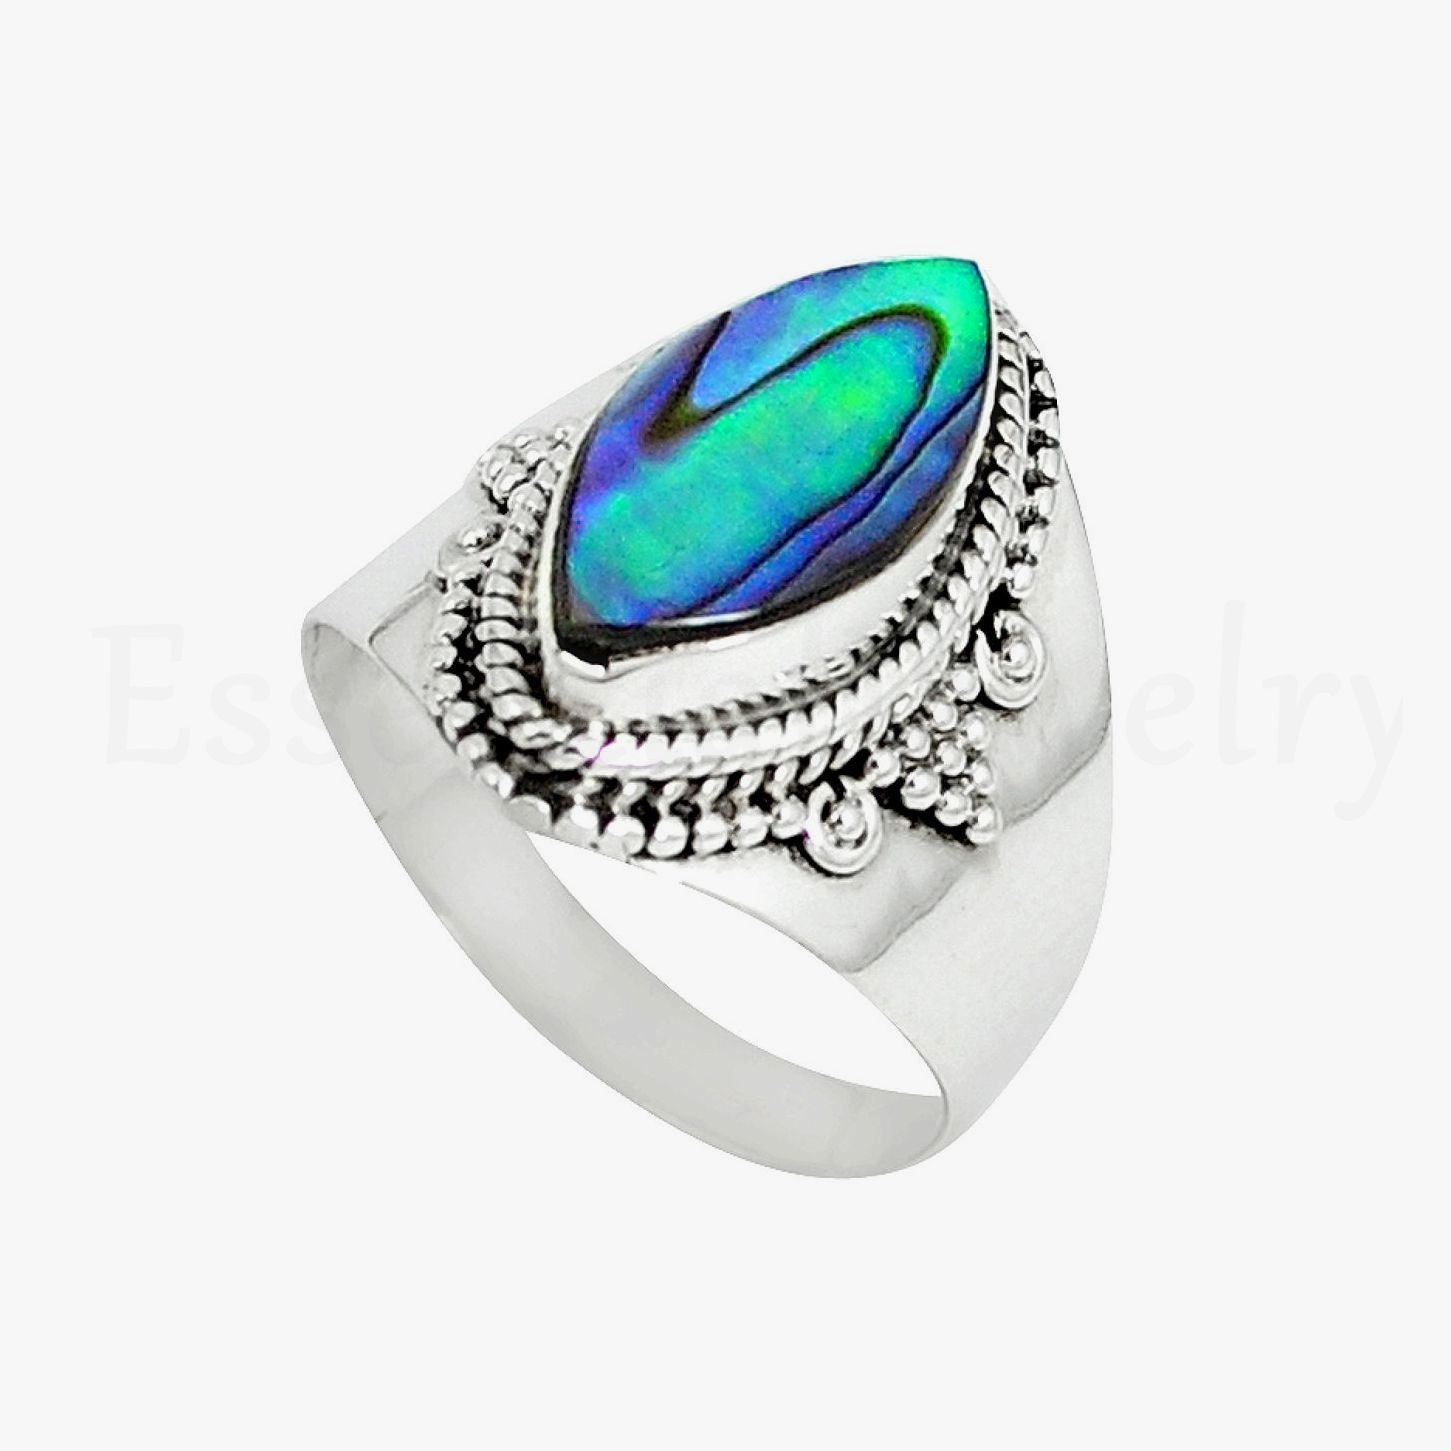 Beautiful Ring Abalone Shell Stone Ring Marquise Gemstone - Etsy UK